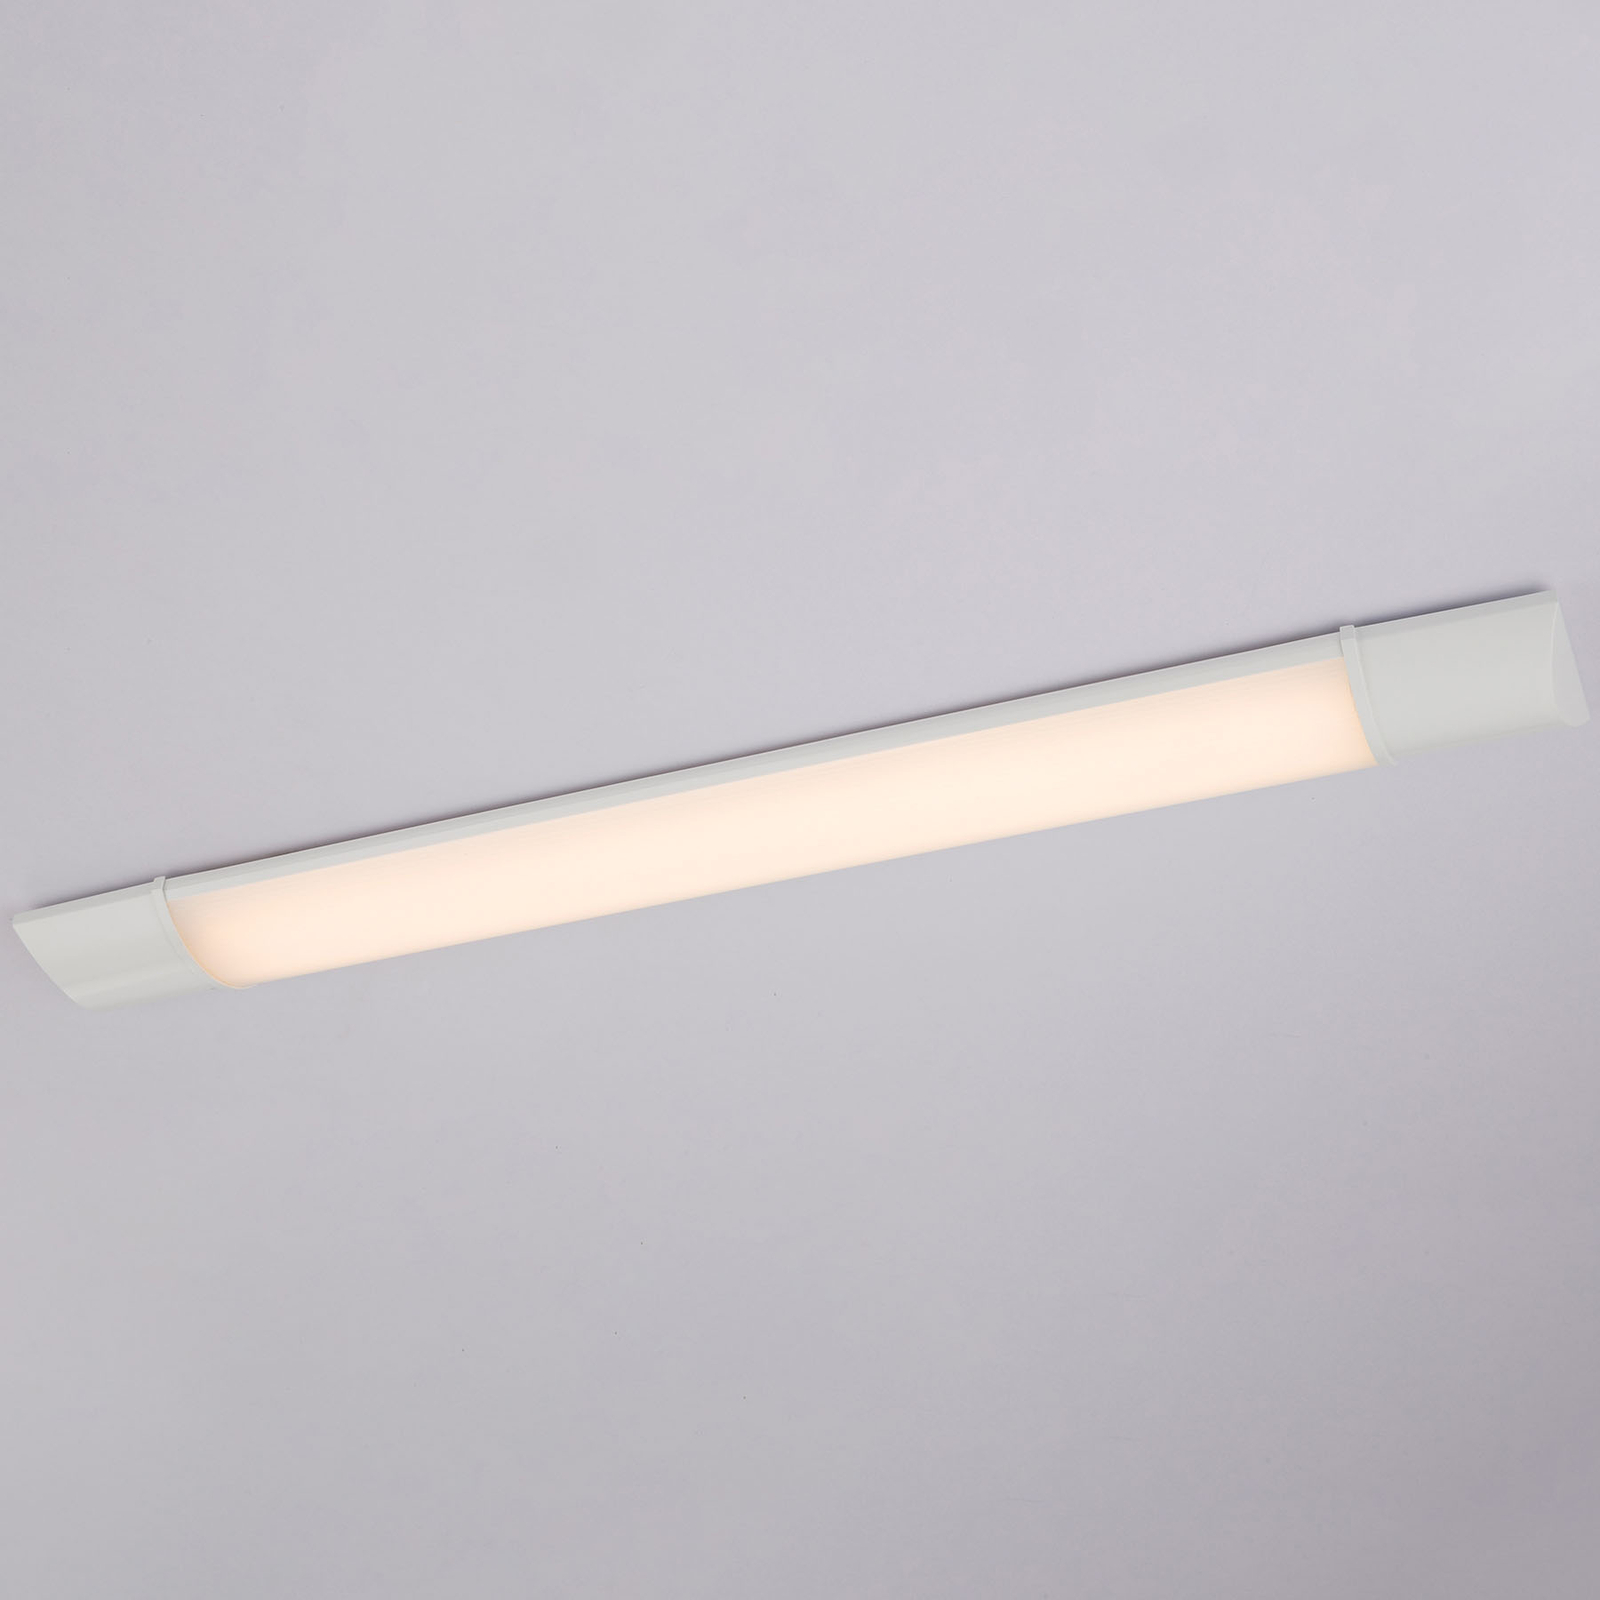 LED osvětlení pod skříňku Obara, IP20, délka 60 cm